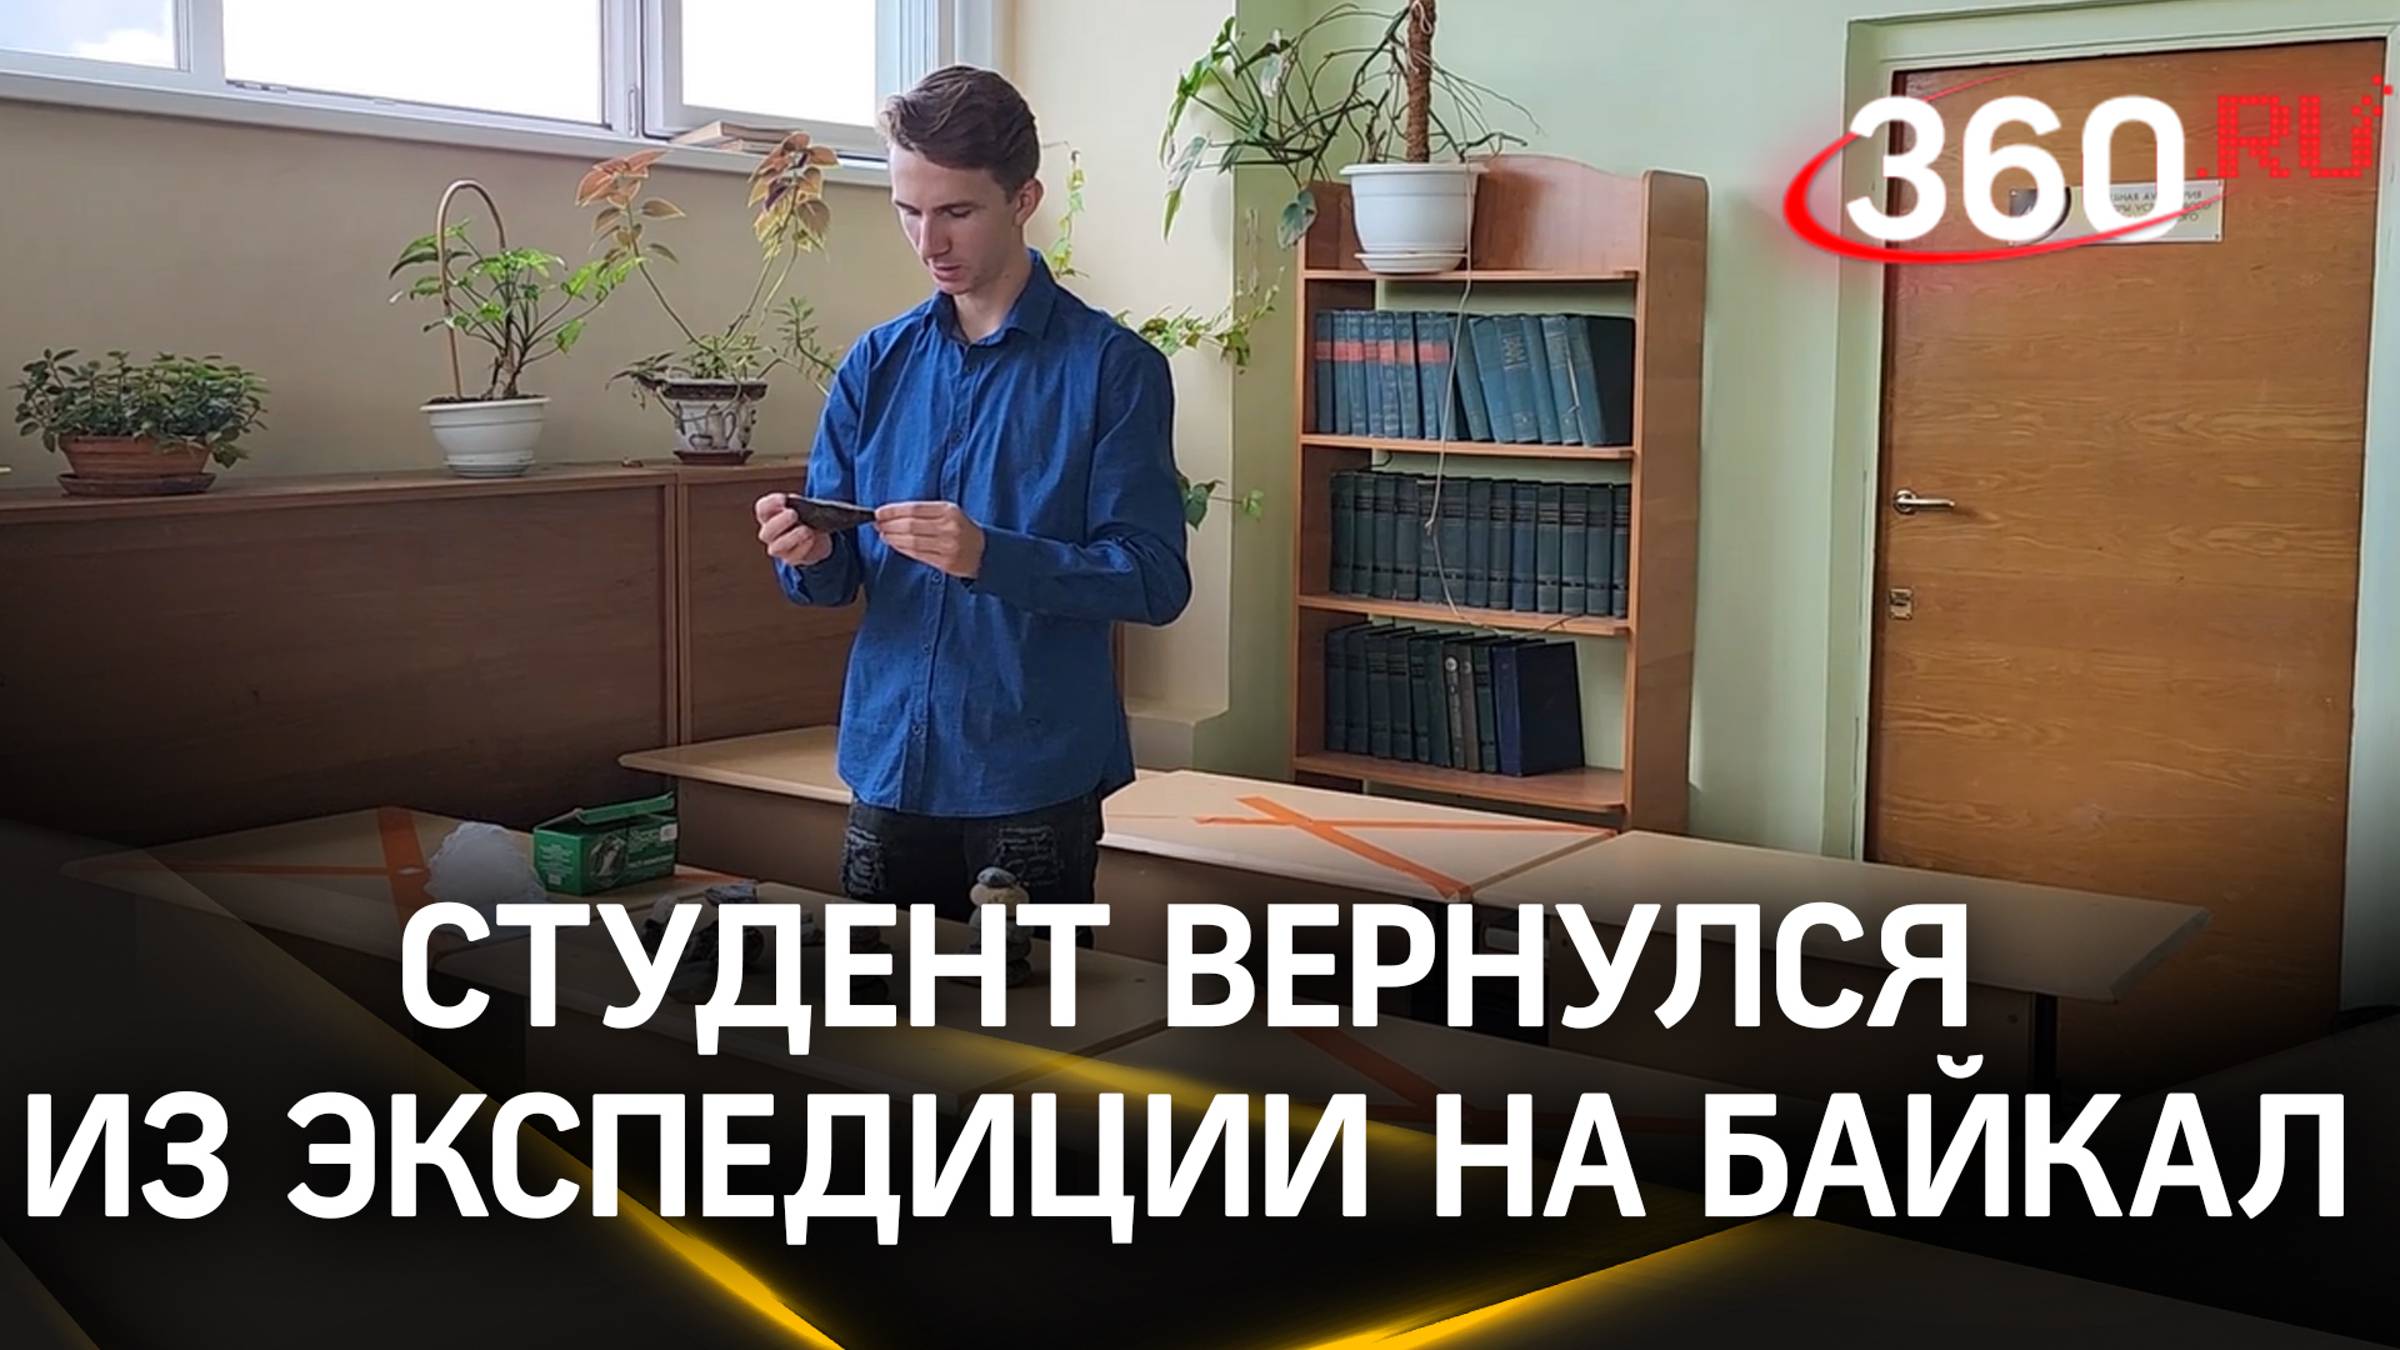 Студент из Дубны вернулся из экспедиции на Байкал